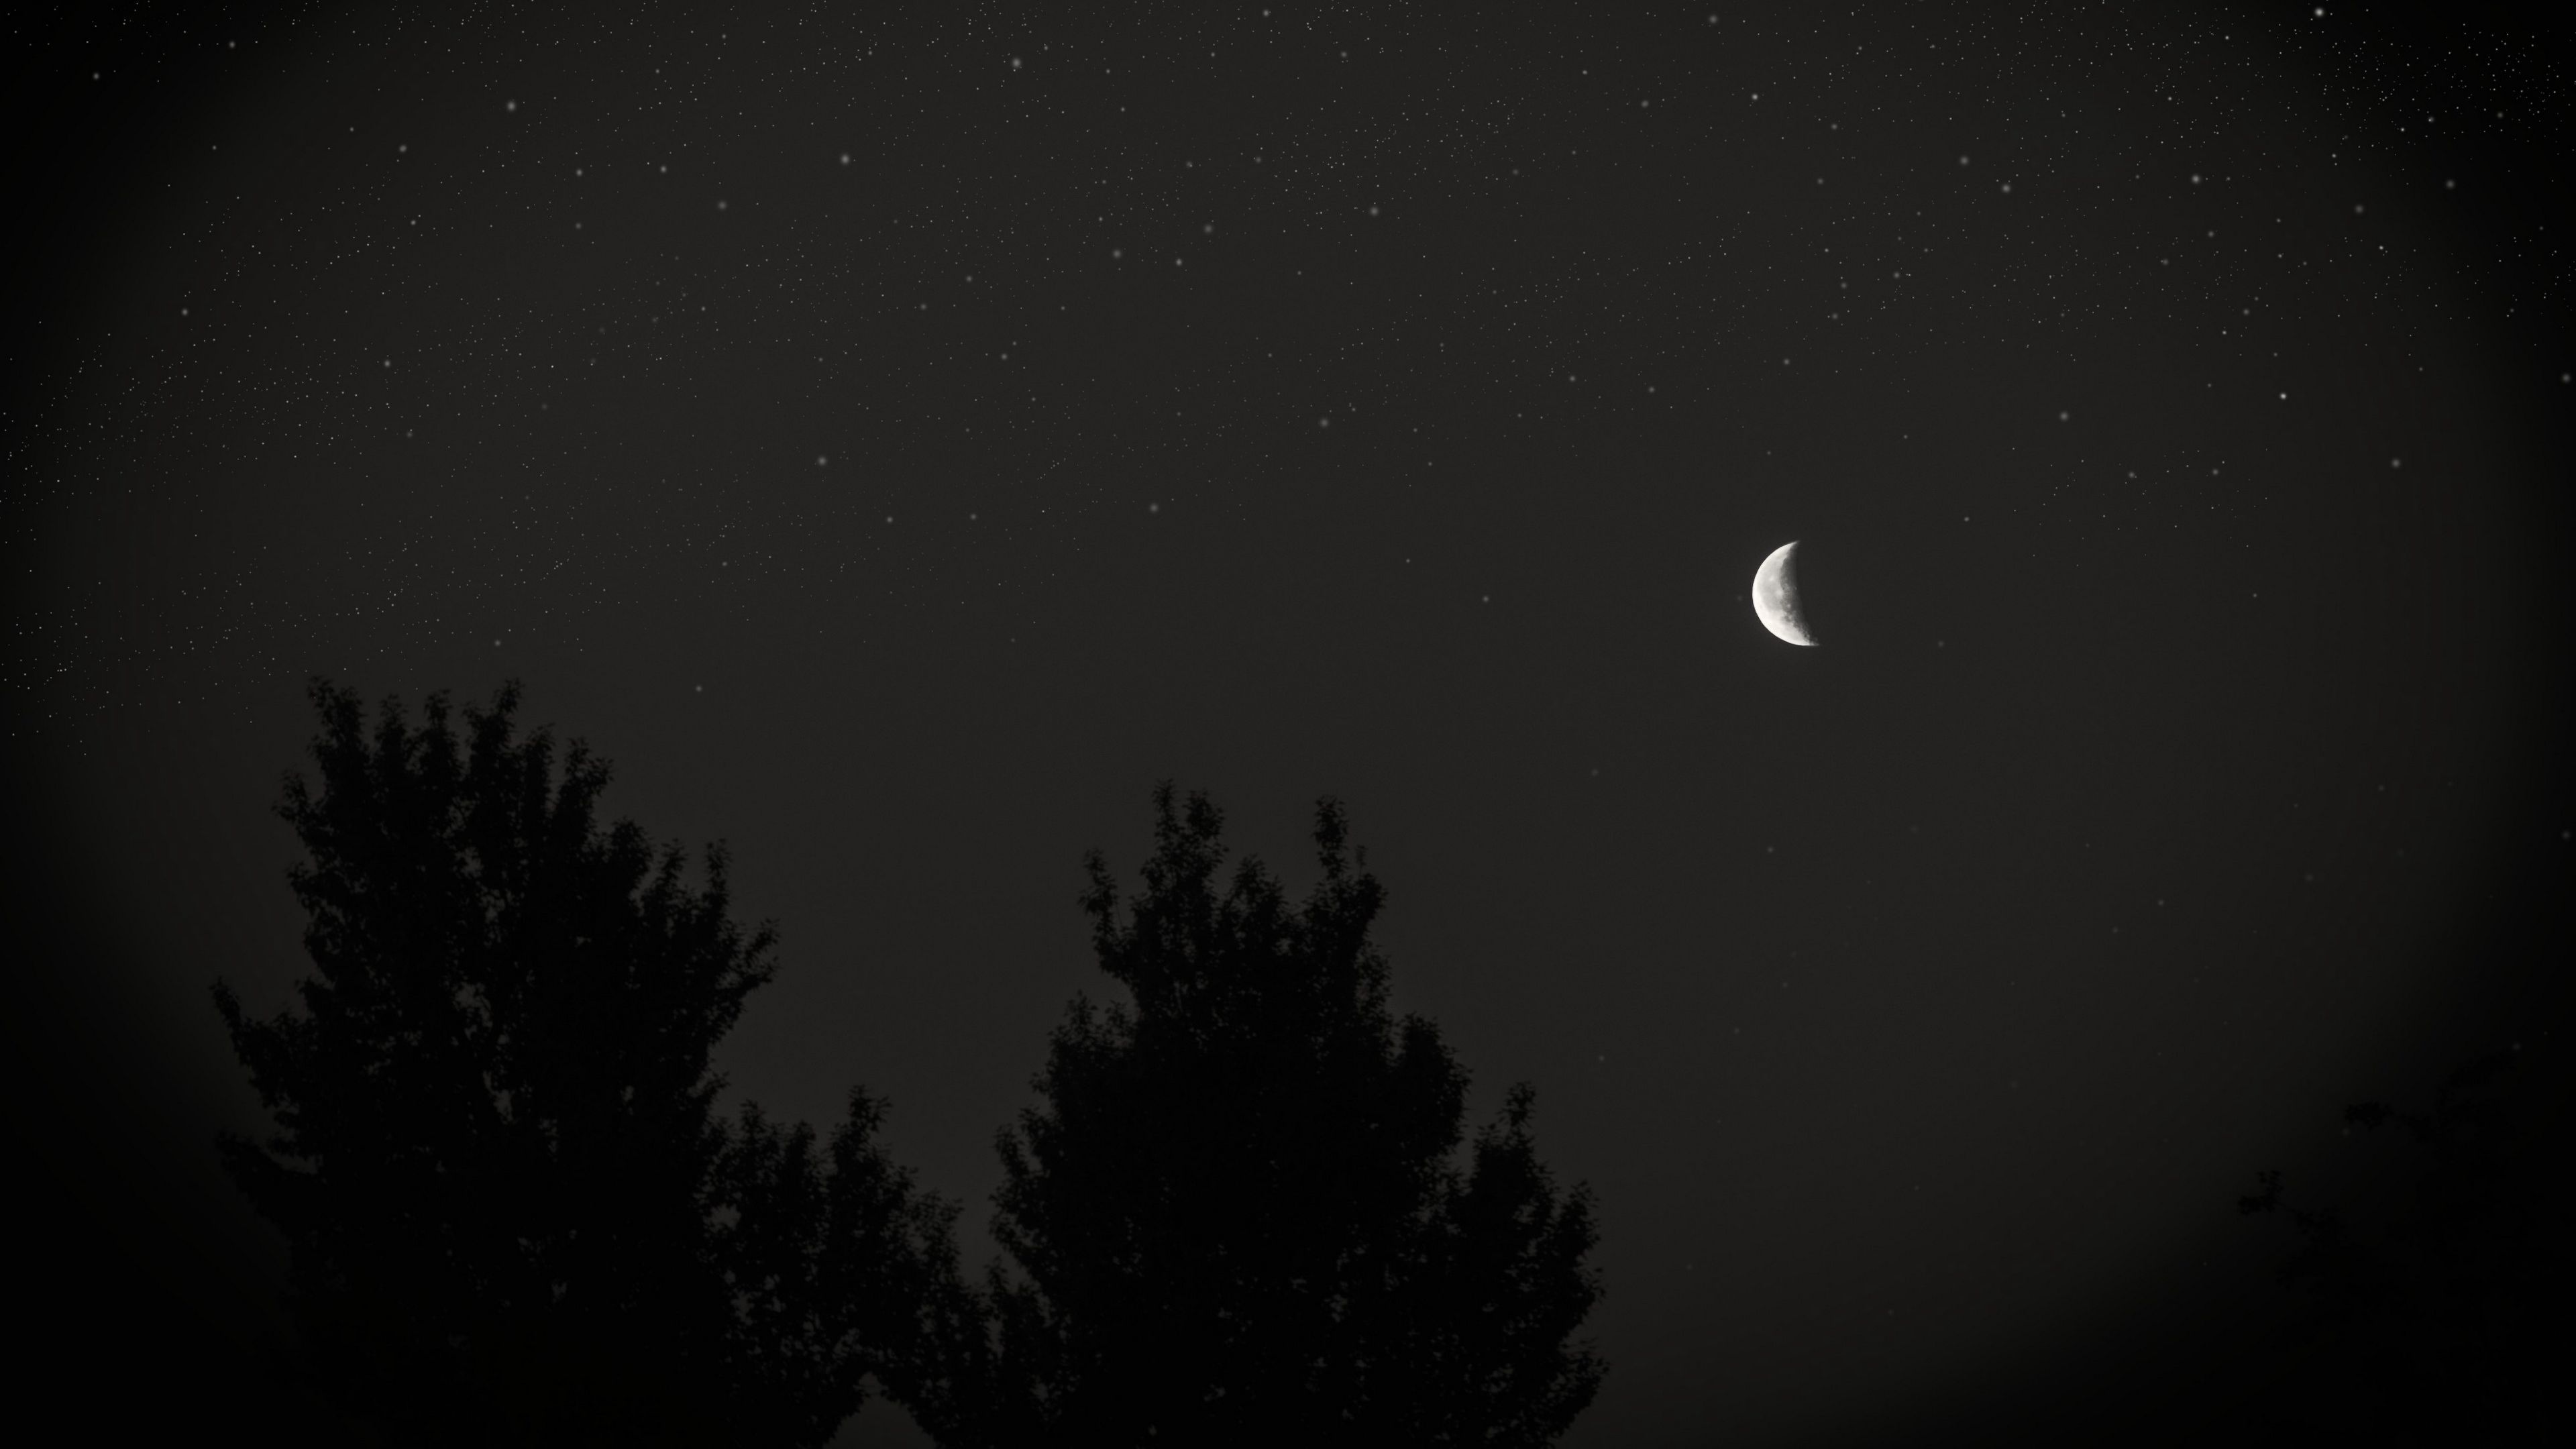 Download wallpaper 3840x2160 moon, night, sky, tree, stars, dark 4k uhd 16:9 HD background